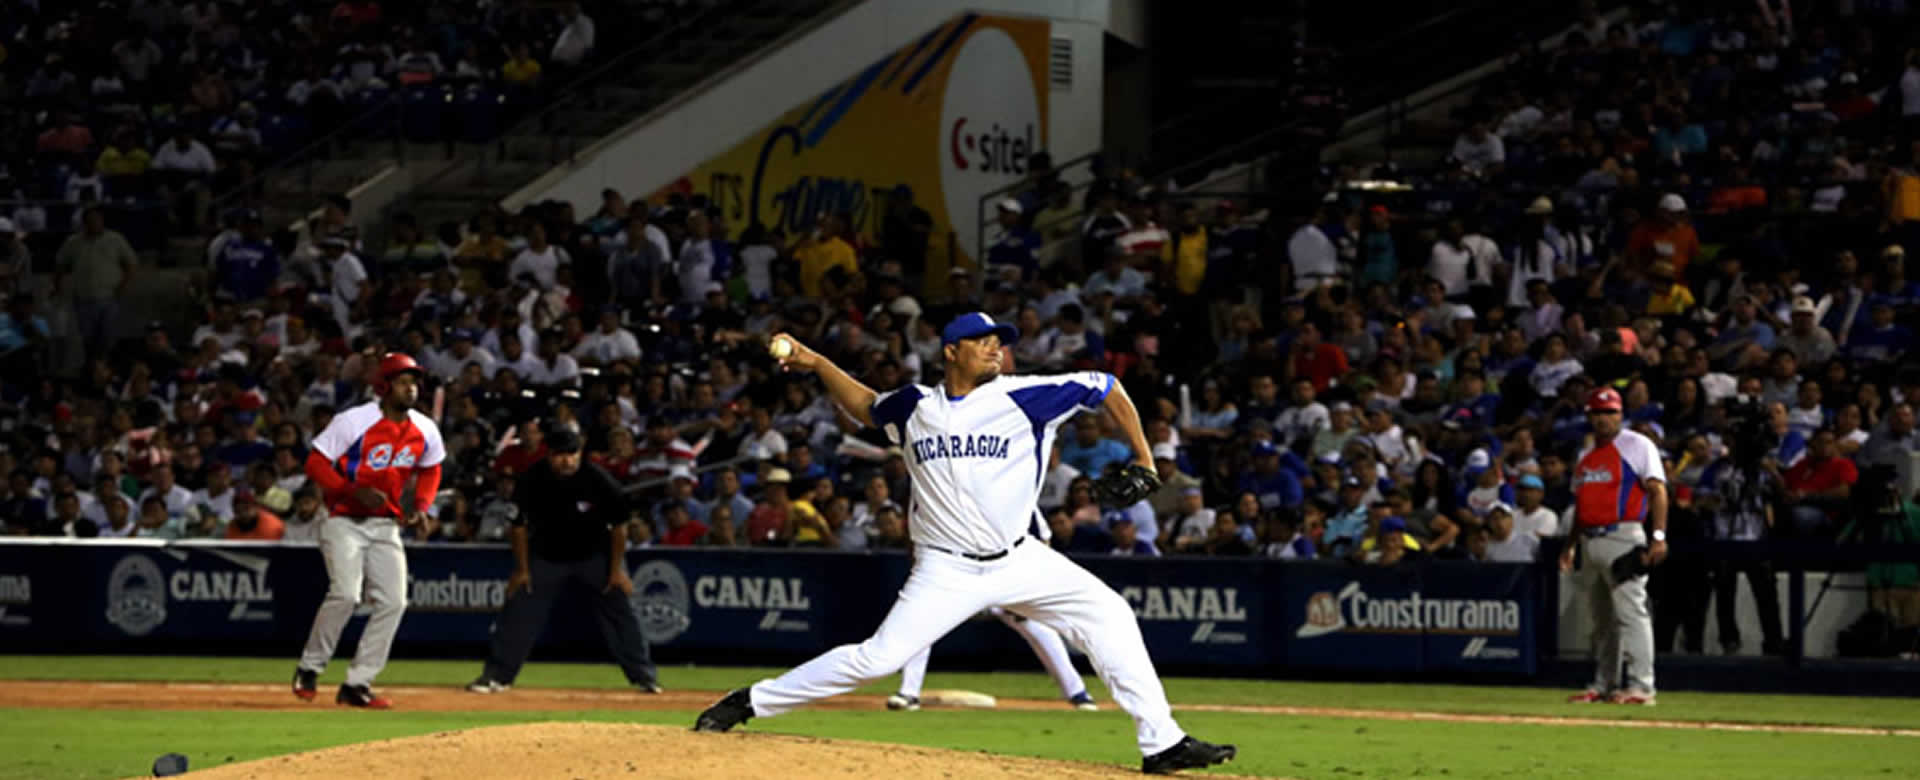 Nicaragua cuba fiesta beisbolera